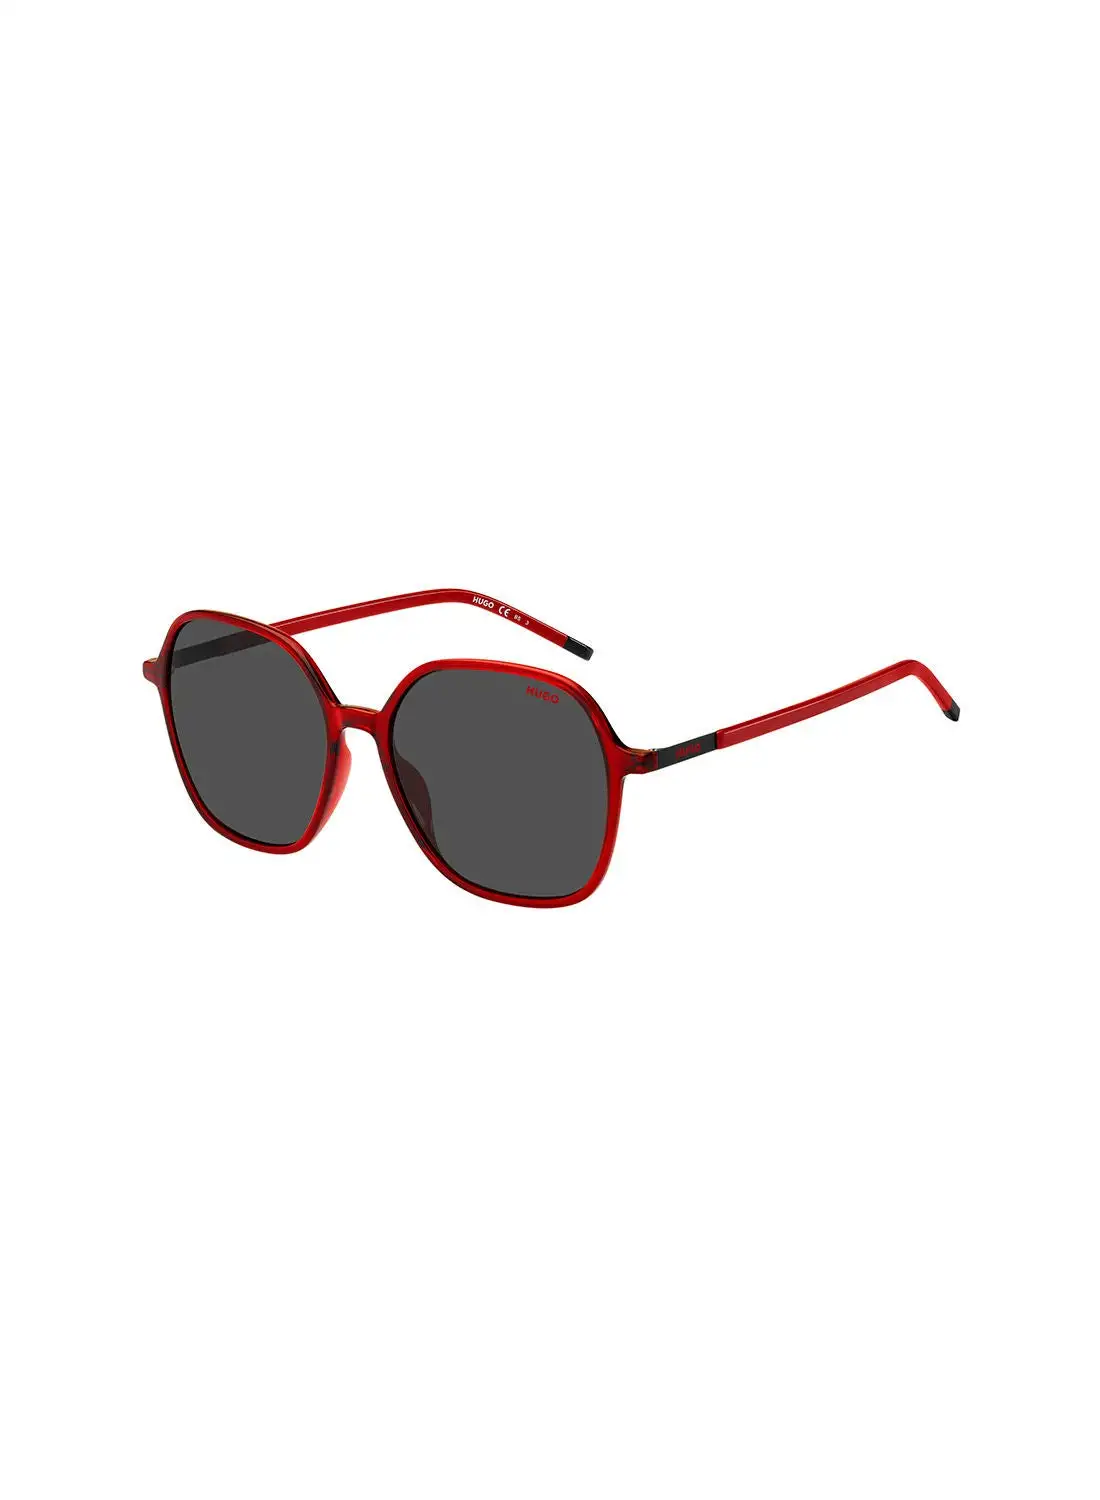 HUGO Women's UV Protection Octagonal Sunglasses - Hg 1236/S Red 55 - Lens Size: 55 Mm